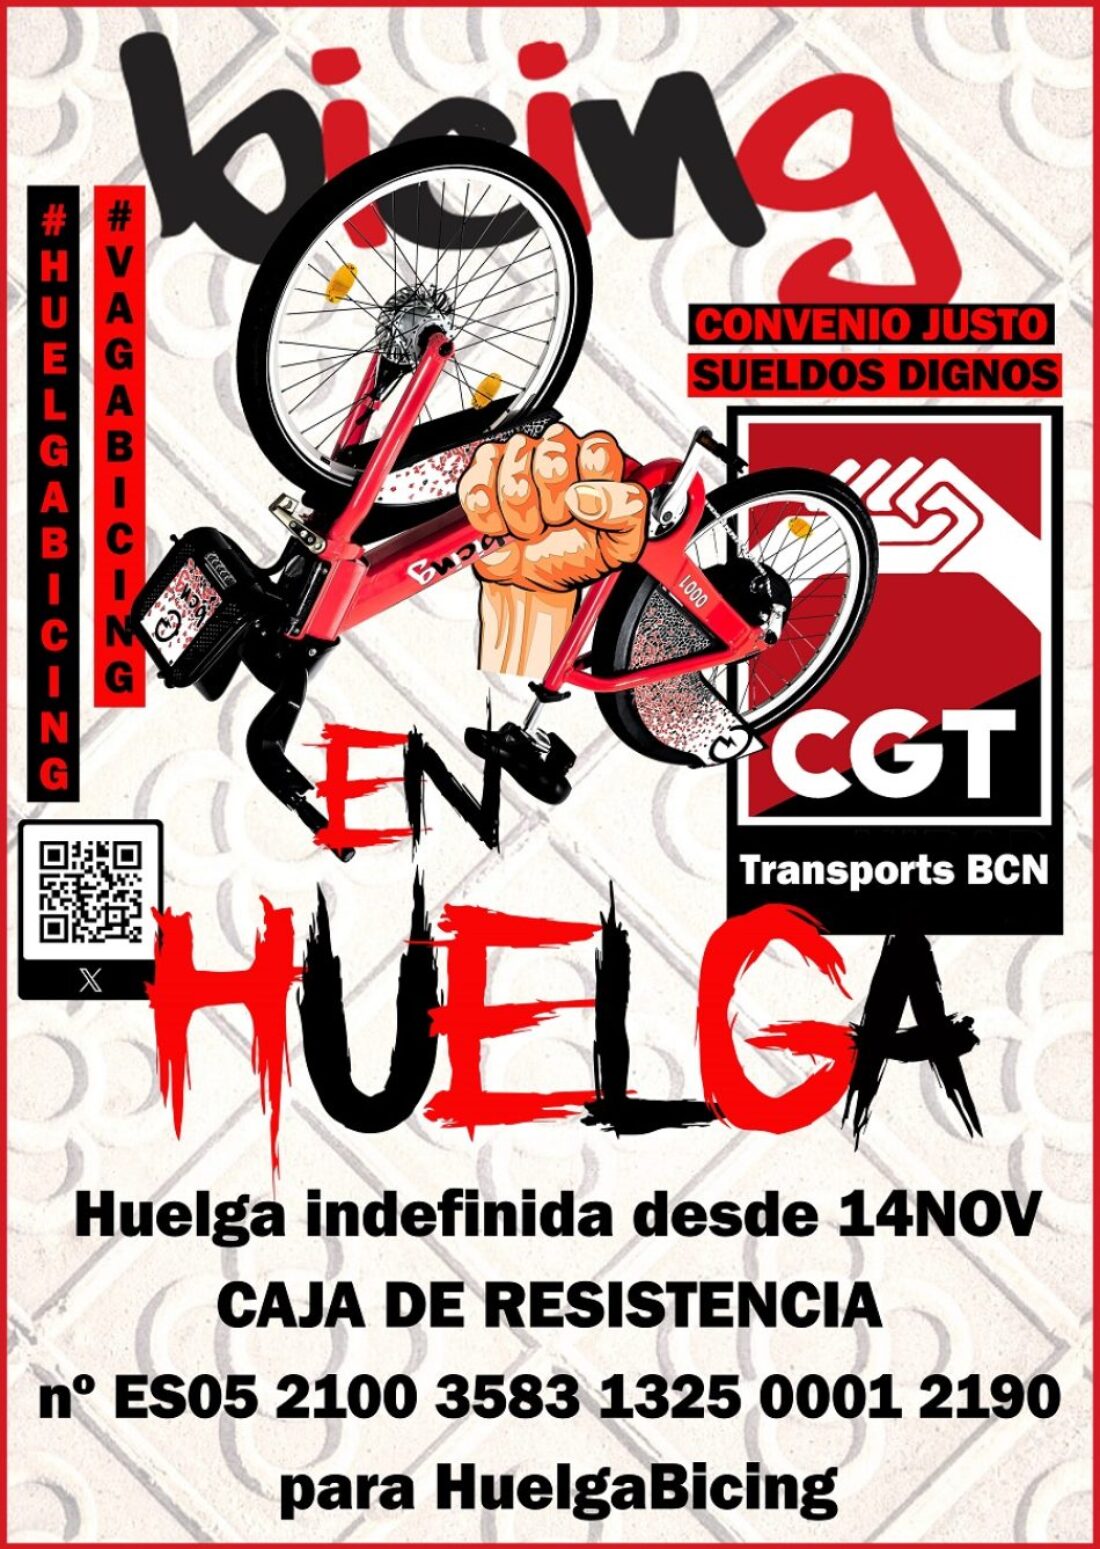 CGT abre caja de resistencia en el séptimo día de huelga indefinida en el bicing de Barcelona, con un seguimiento del 95%